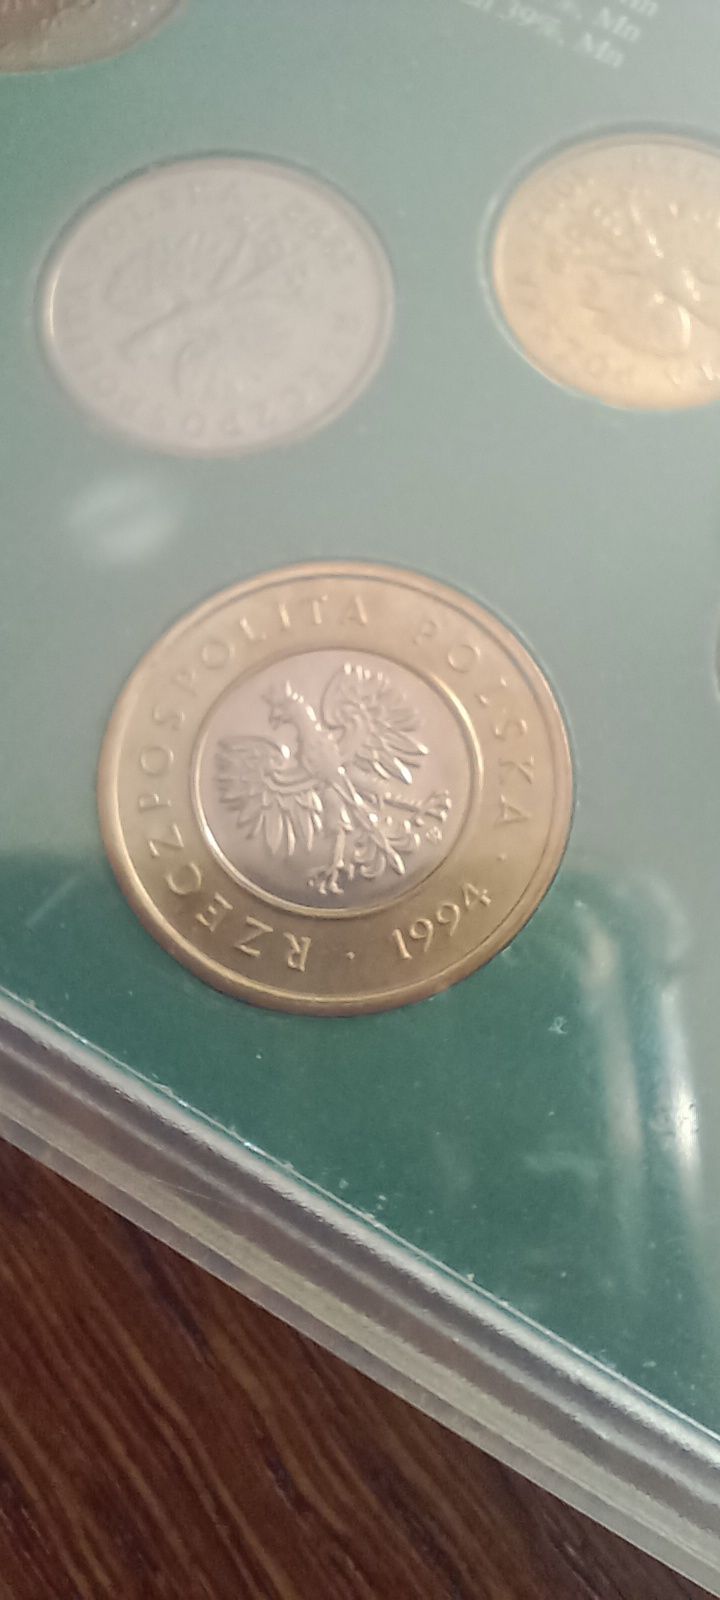 III RP zestaw obiegowych monet po denominacji